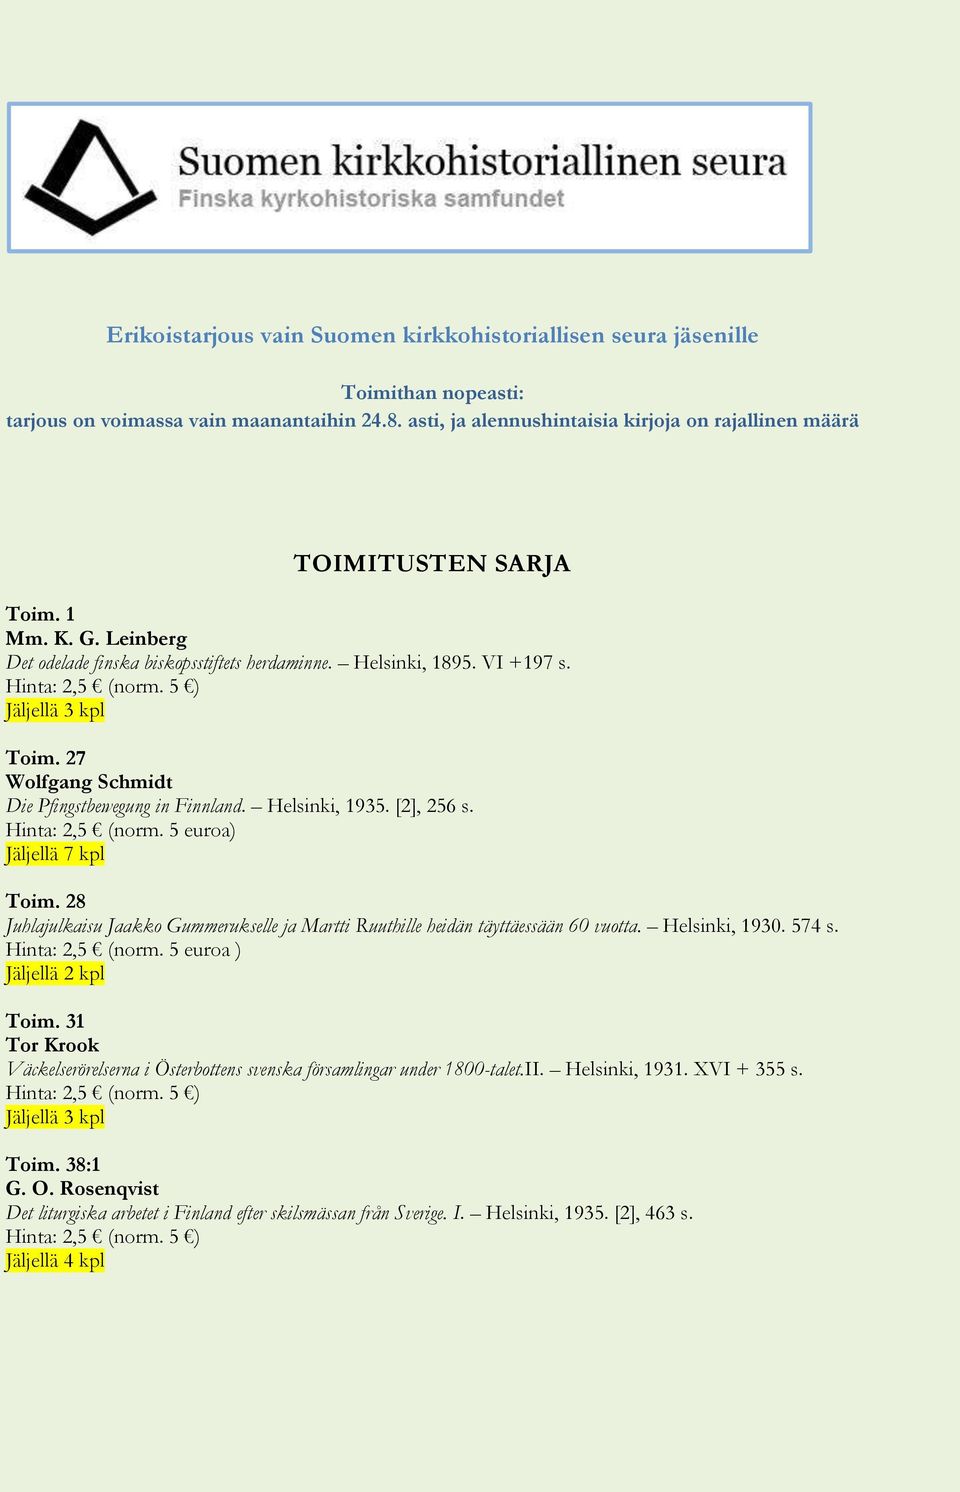 Helsinki, 1935. [2], 256 s. Hinta: 2,5 (norm. 5 euroa) Toim. 28 Juhlajulkaisu Jaakko Gummerukselle ja Martti Ruuthille heidän täyttäessään 60 vuotta. Helsinki, 1930. 574 s. Hinta: 2,5 (norm. 5 euroa ) Jäljellä 2 kpl Toim.